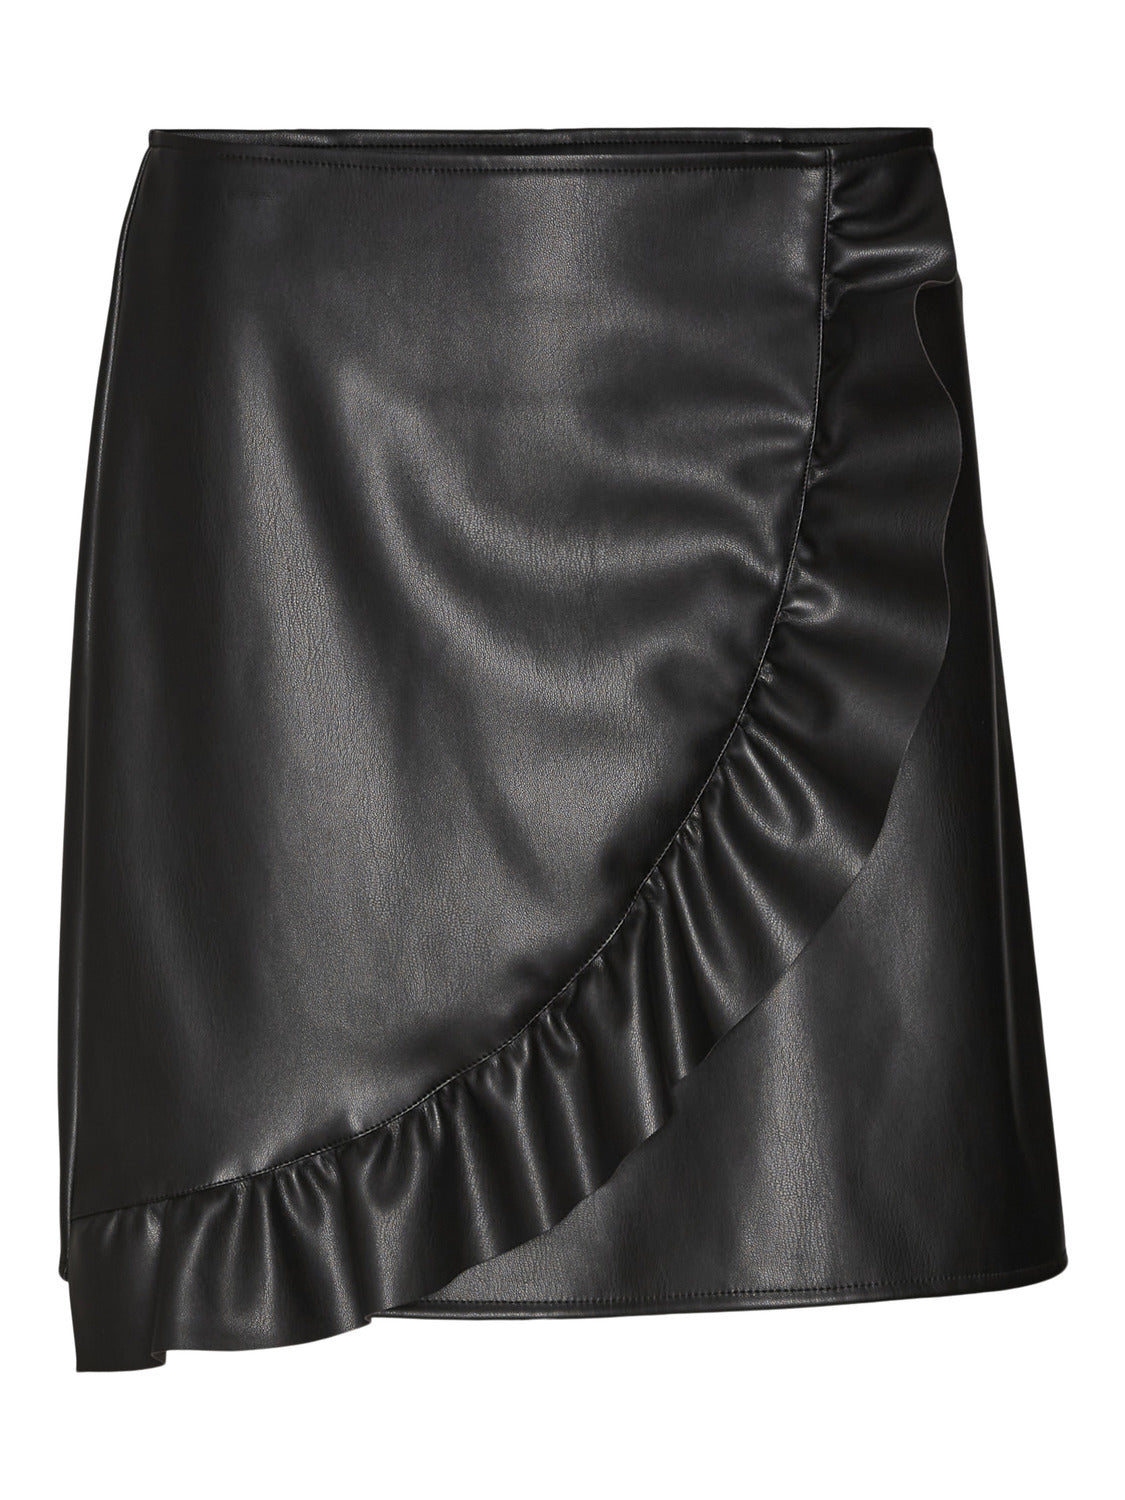 NMLUKE Skirt - Black